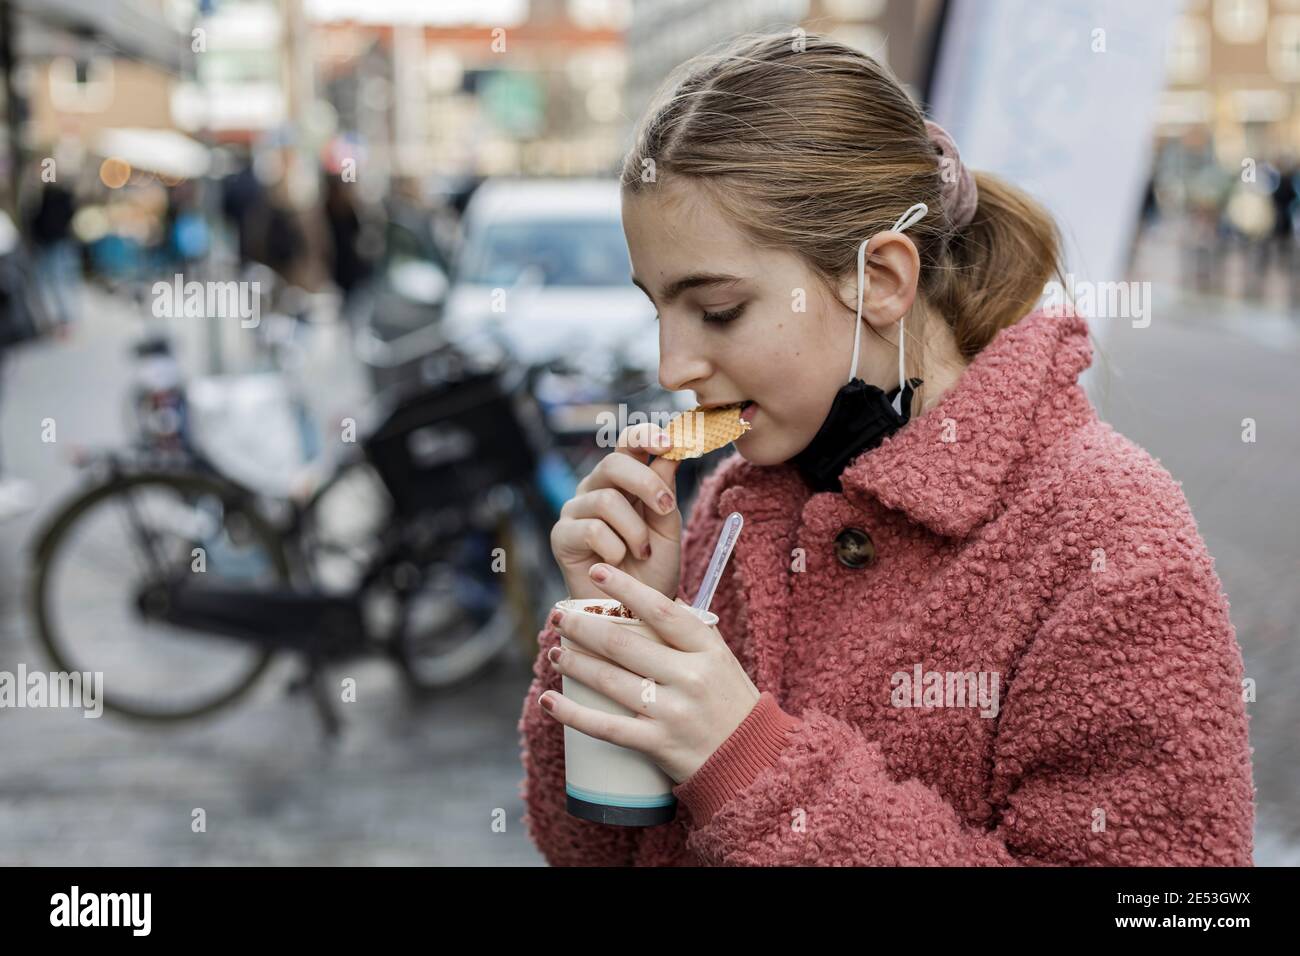 Junge blonde Mädchen trägt eine Gesichtsmaske unter ihrem Kinn, essen ein Cookie draußen in einer städtischen Umgebung Stockfoto